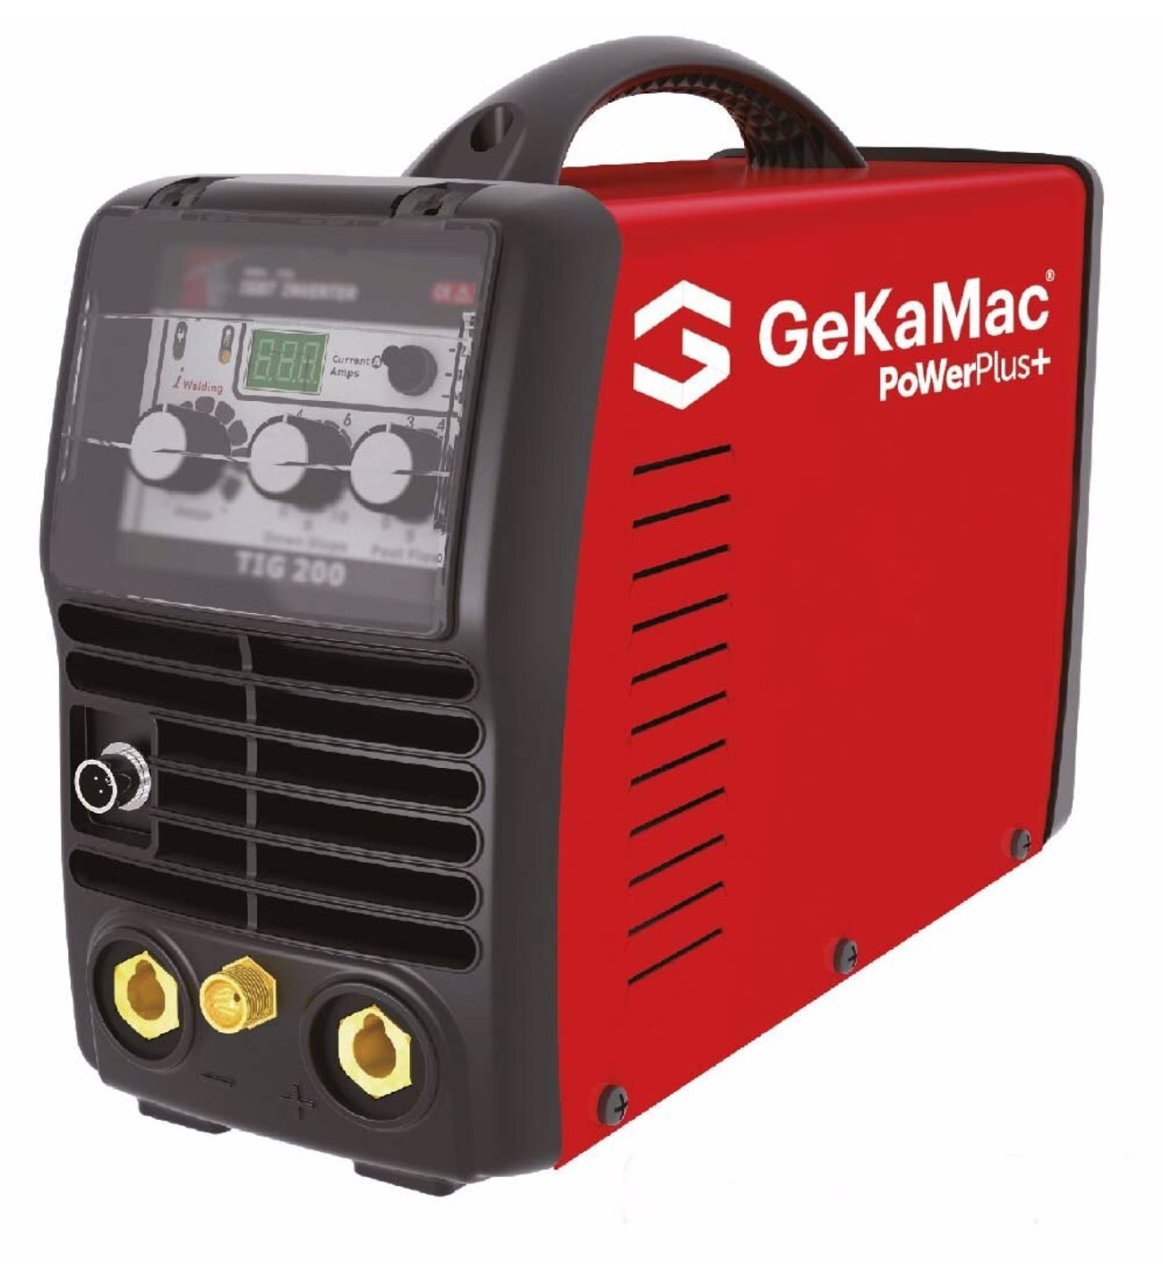 GeKaMac Power Plus Tig 200 DC Kaynak Makinesi